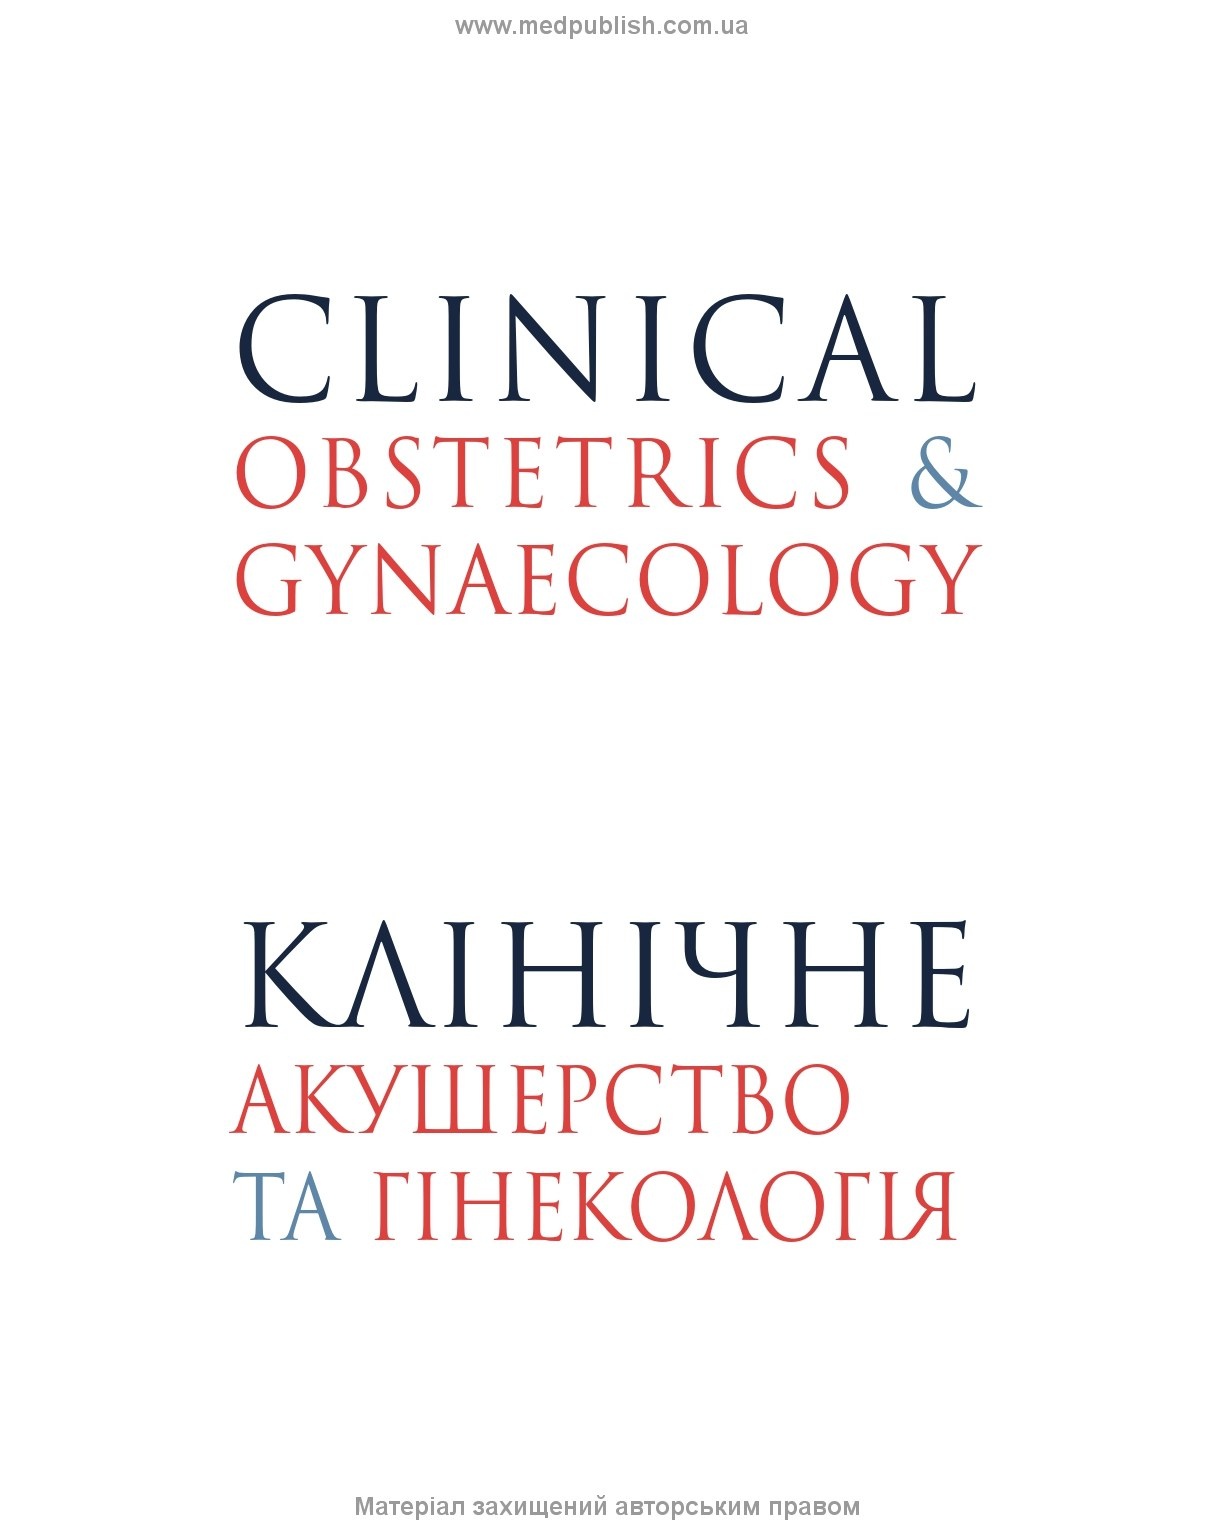 Клінічне акушерство та гінекологія: 4-е видання. Автор — Браян А. Маґован, Borders General Hospital. 